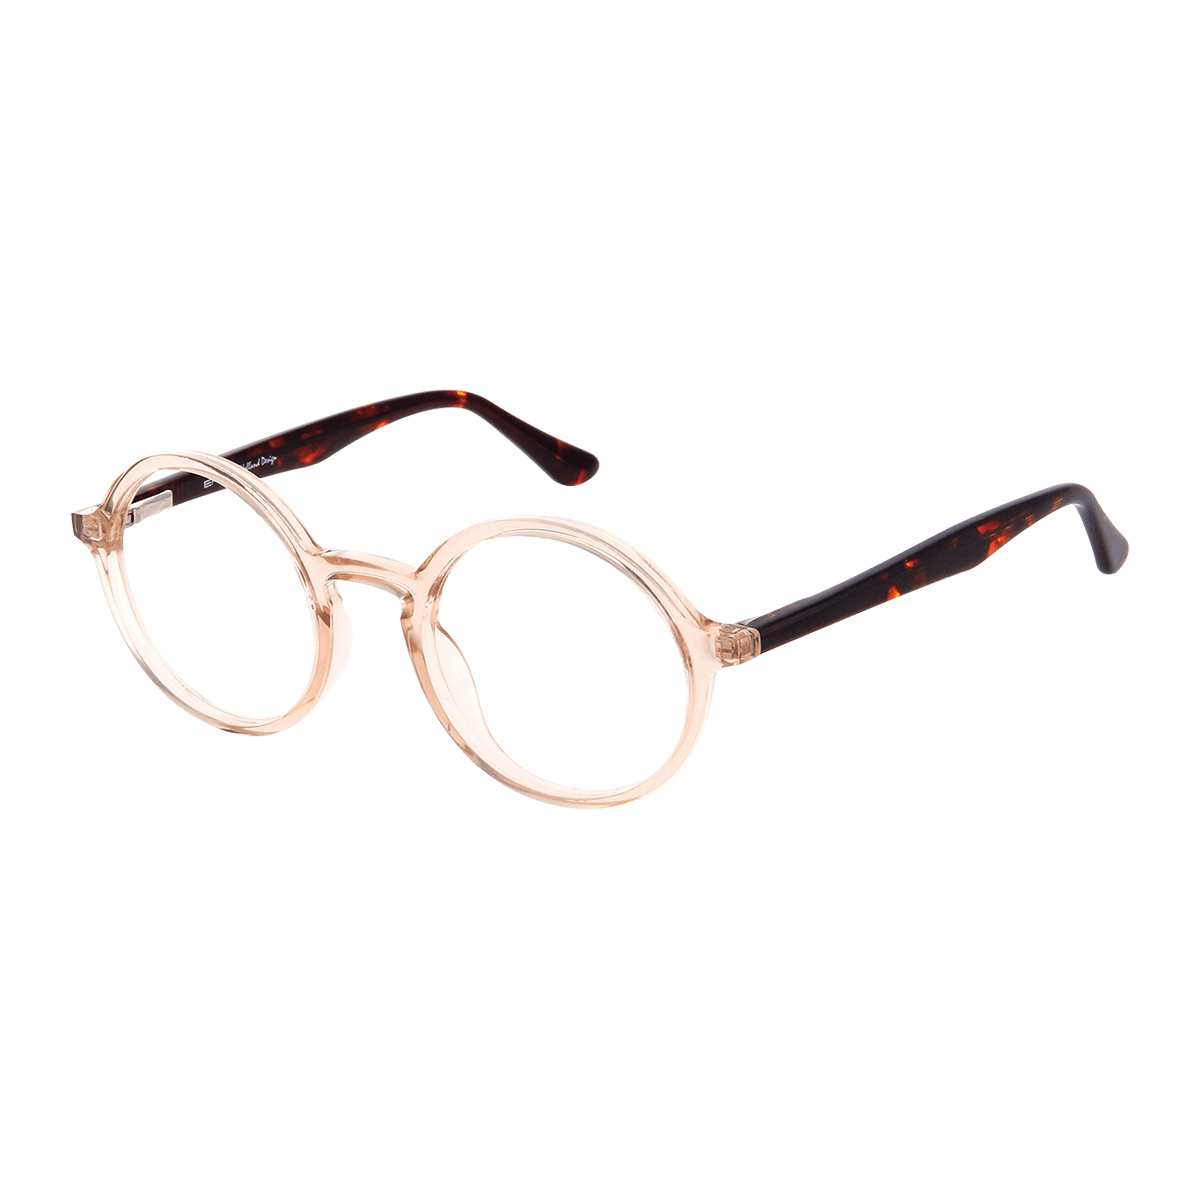 Ossa - Round Gold Reading Glasses for Women